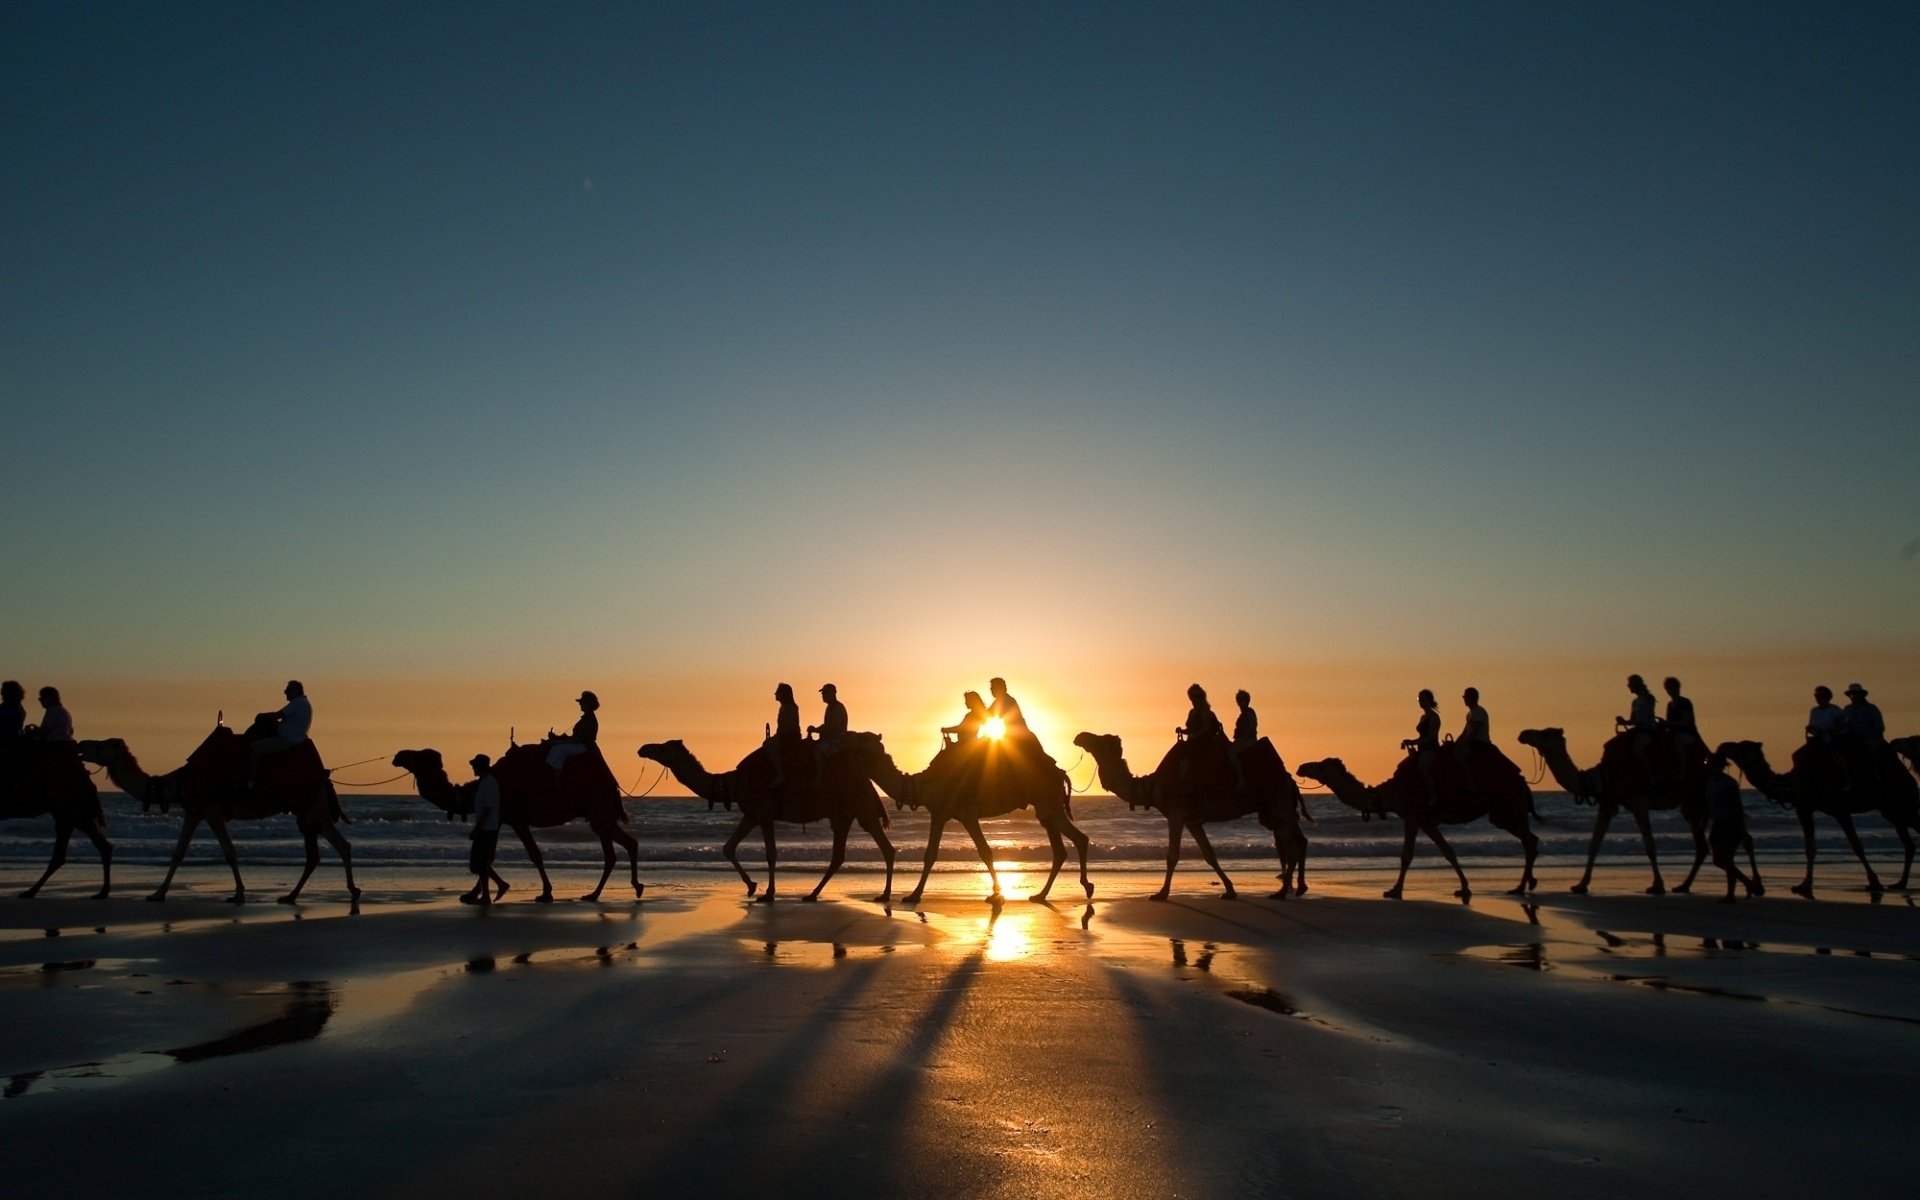 Camel caravan at sunset in the desert